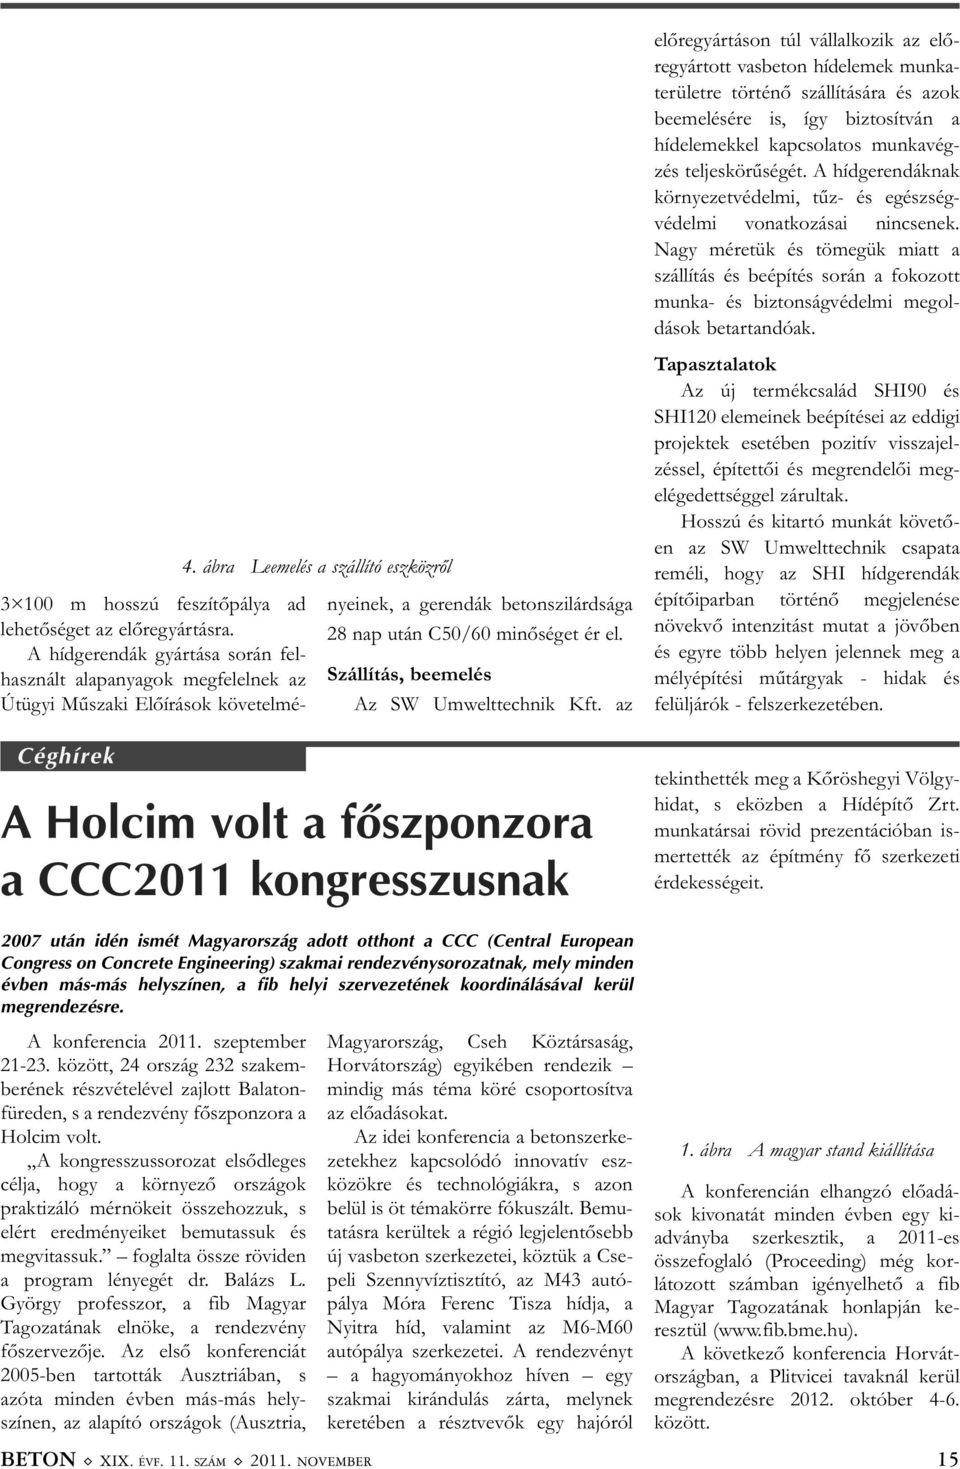 az A Holcim volt a fõszponzora a CCC2011 kongresszusnak 2007 után idén ismét Magyarország adott otthont a CCC (Central European Congress on Concrete Engineering) szakmai rendezvénysorozatnak, mely